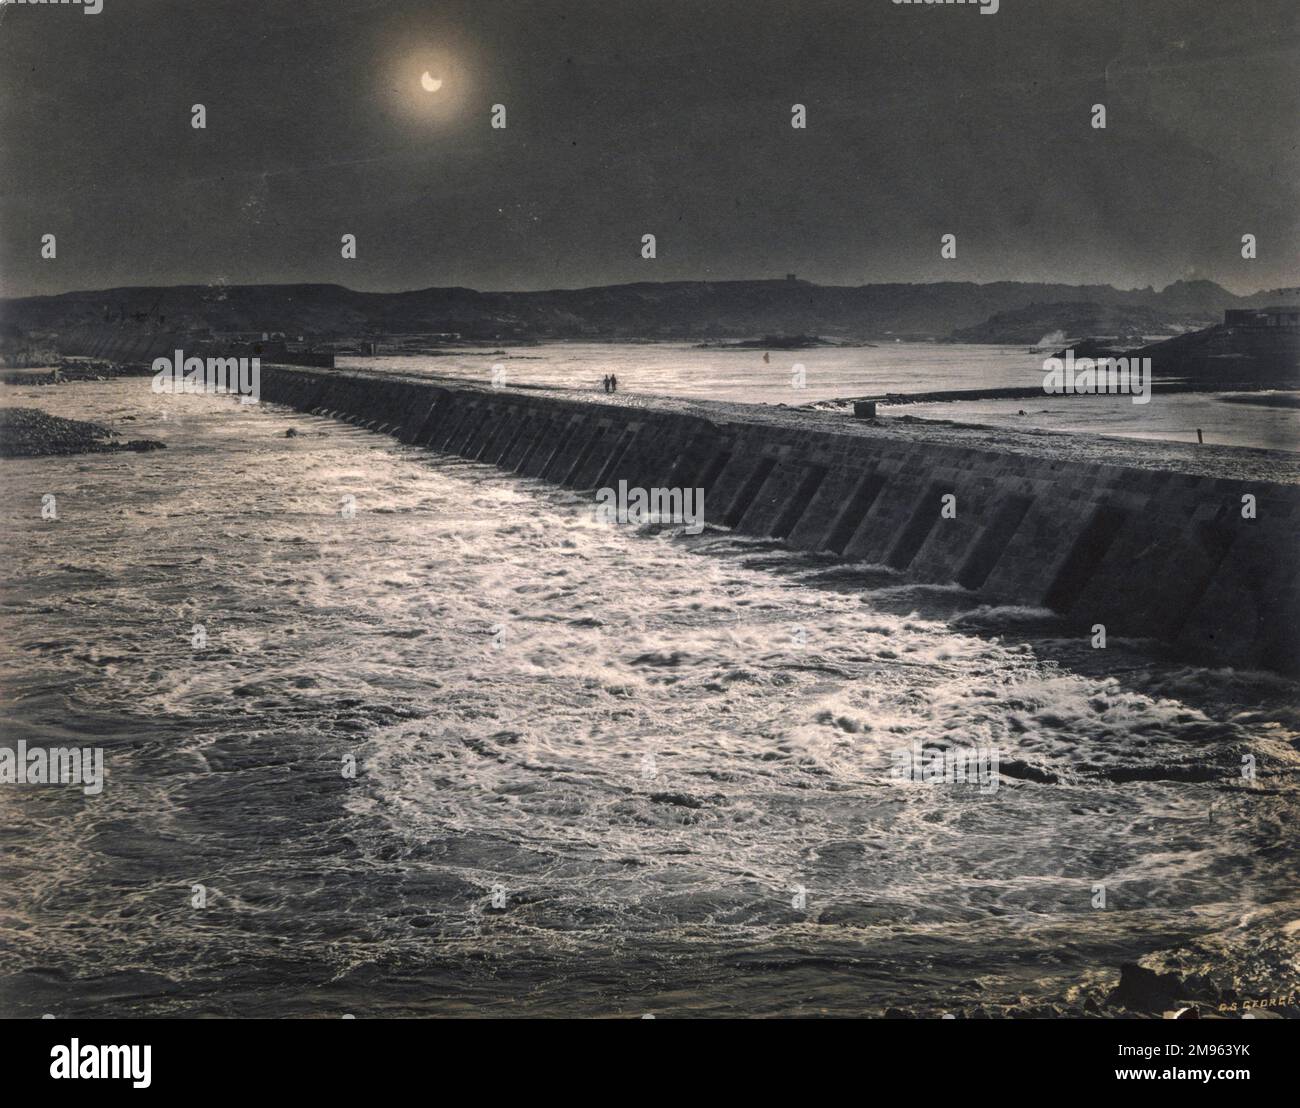 La diga di Assuan, sul fiume Nilo in Egitto, fotografata durante un'eclissi. Questa è l'unica fotografia di una diga presa durante un'eclissi in tutta la nostra collezione. Foto Stock